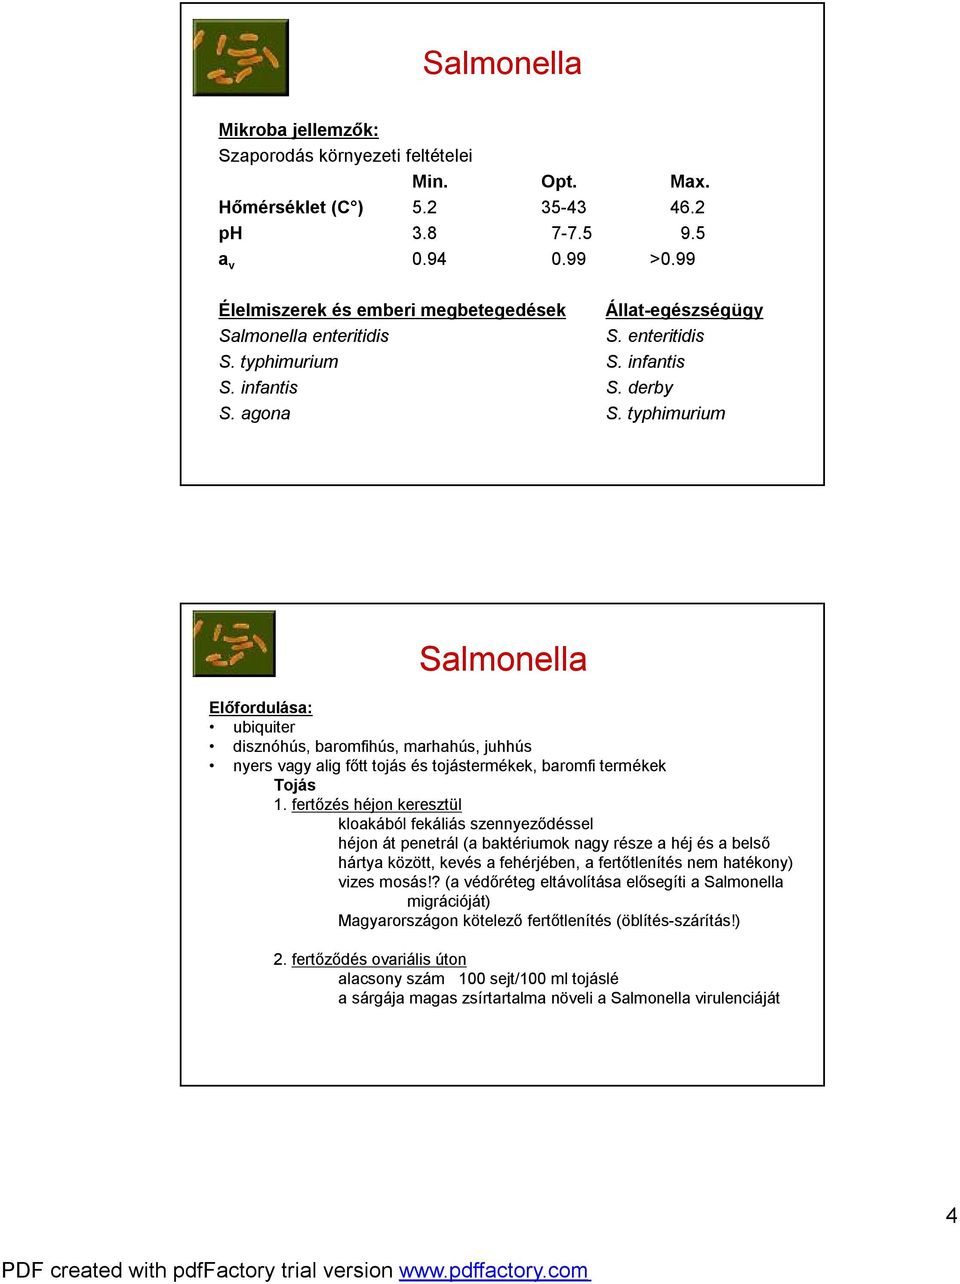 typhimurium Salmonella Előfordulása: ubiquiter disznóhús, baromfihús, marhahús, juhhús nyers vagy alig főtt tojás és tojástermékek, baromfi termékek Tojás 1.